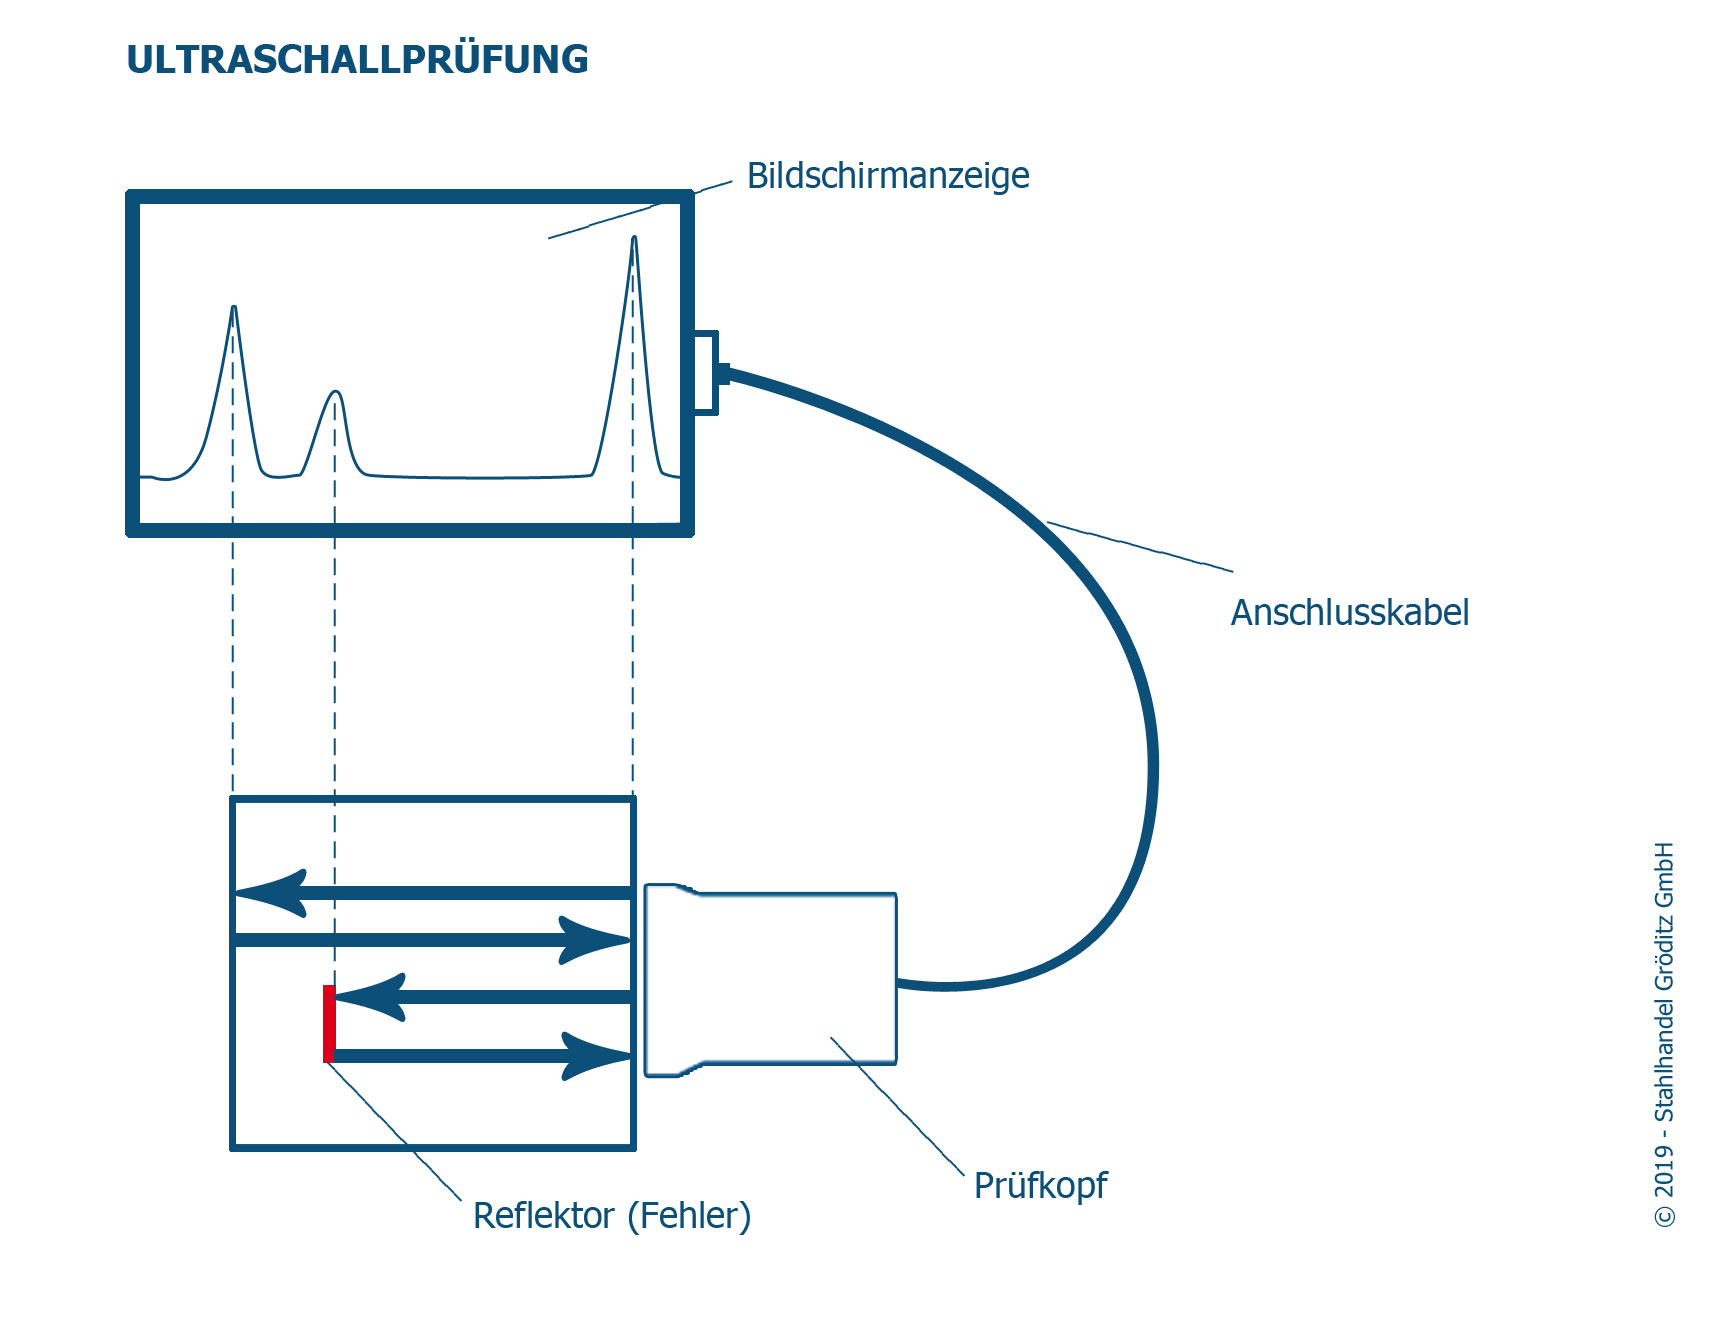 Ultraschallprüfung von Werkstoffen mit dem Impuls-Echo-Verfahren